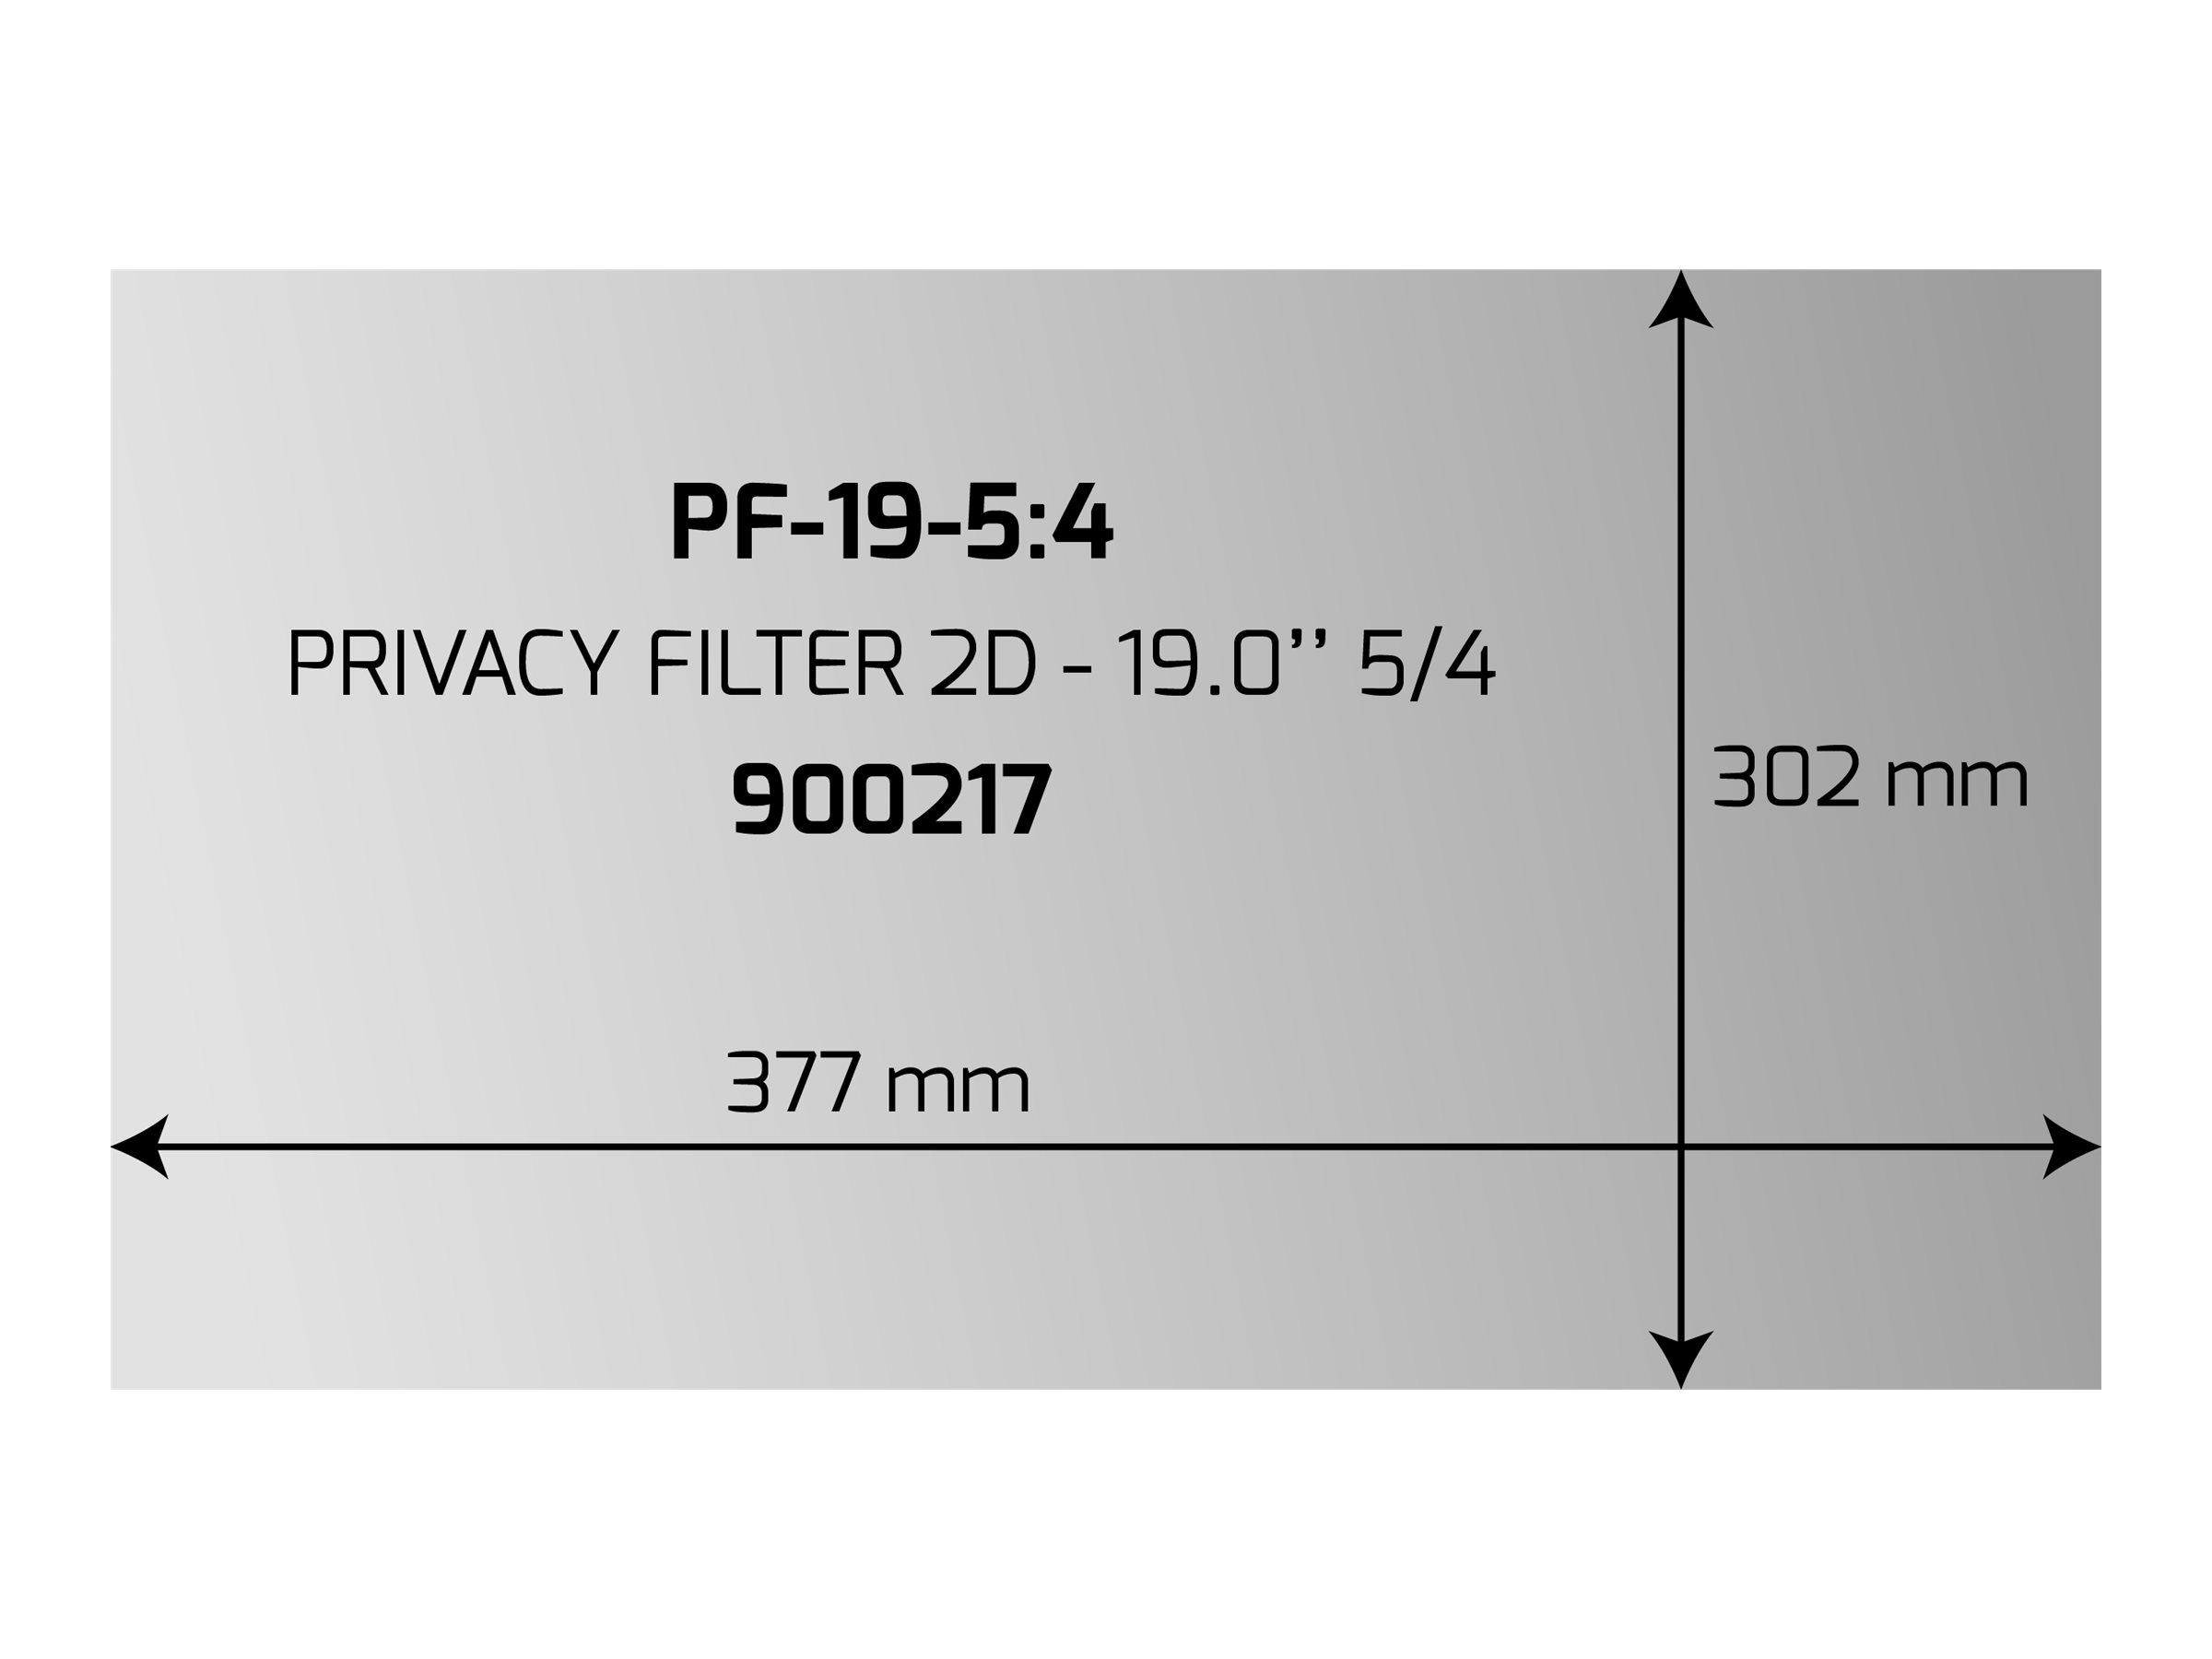 PORT - Filtre anti-indiscrétion - 19" - 900217 - Accessoires pour écran